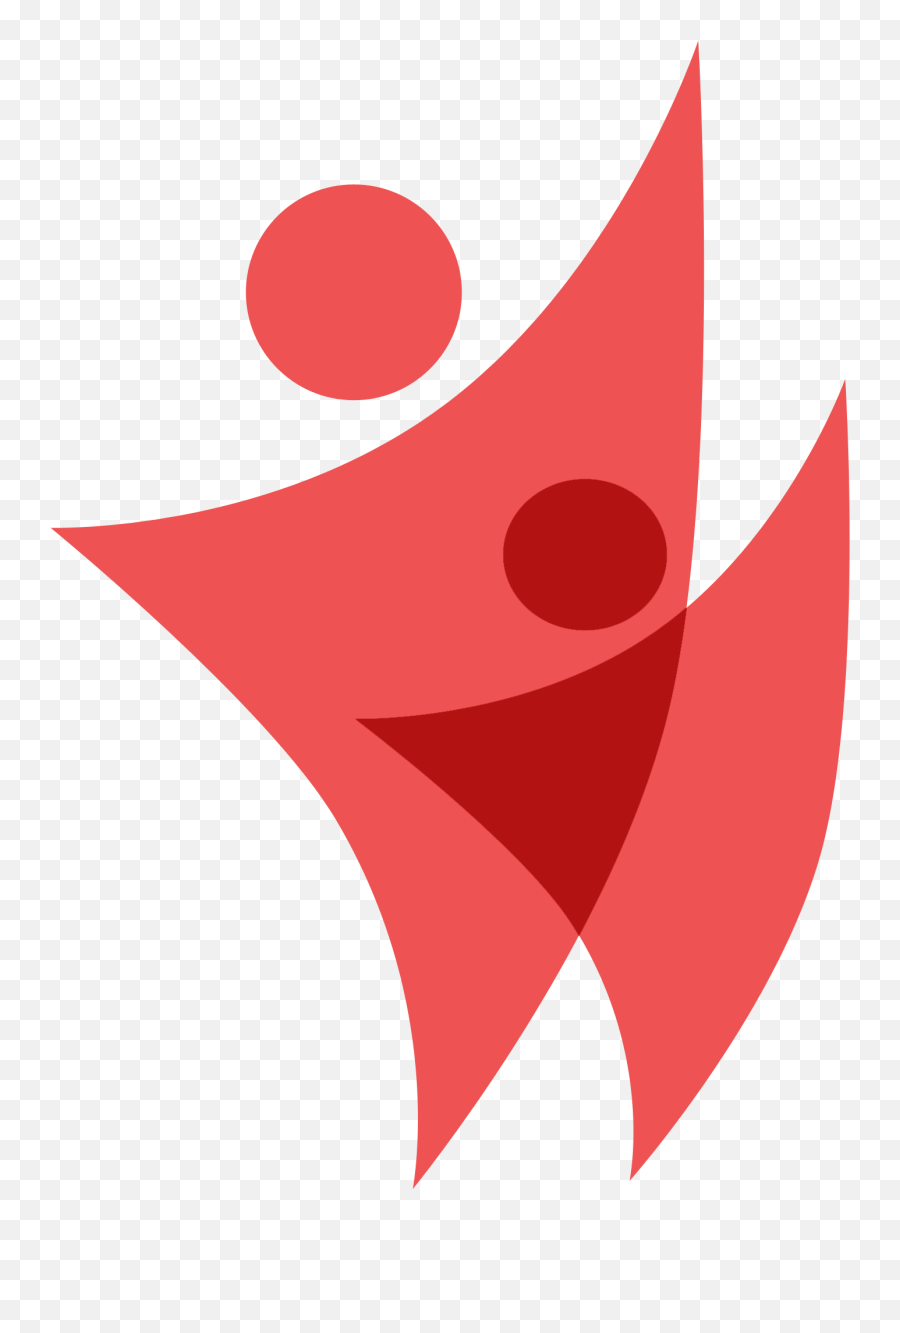 Coca Cola Company Logo - Nsl Oilchem Group Of Companies Dot Emoji,Original Coca Cola Logo